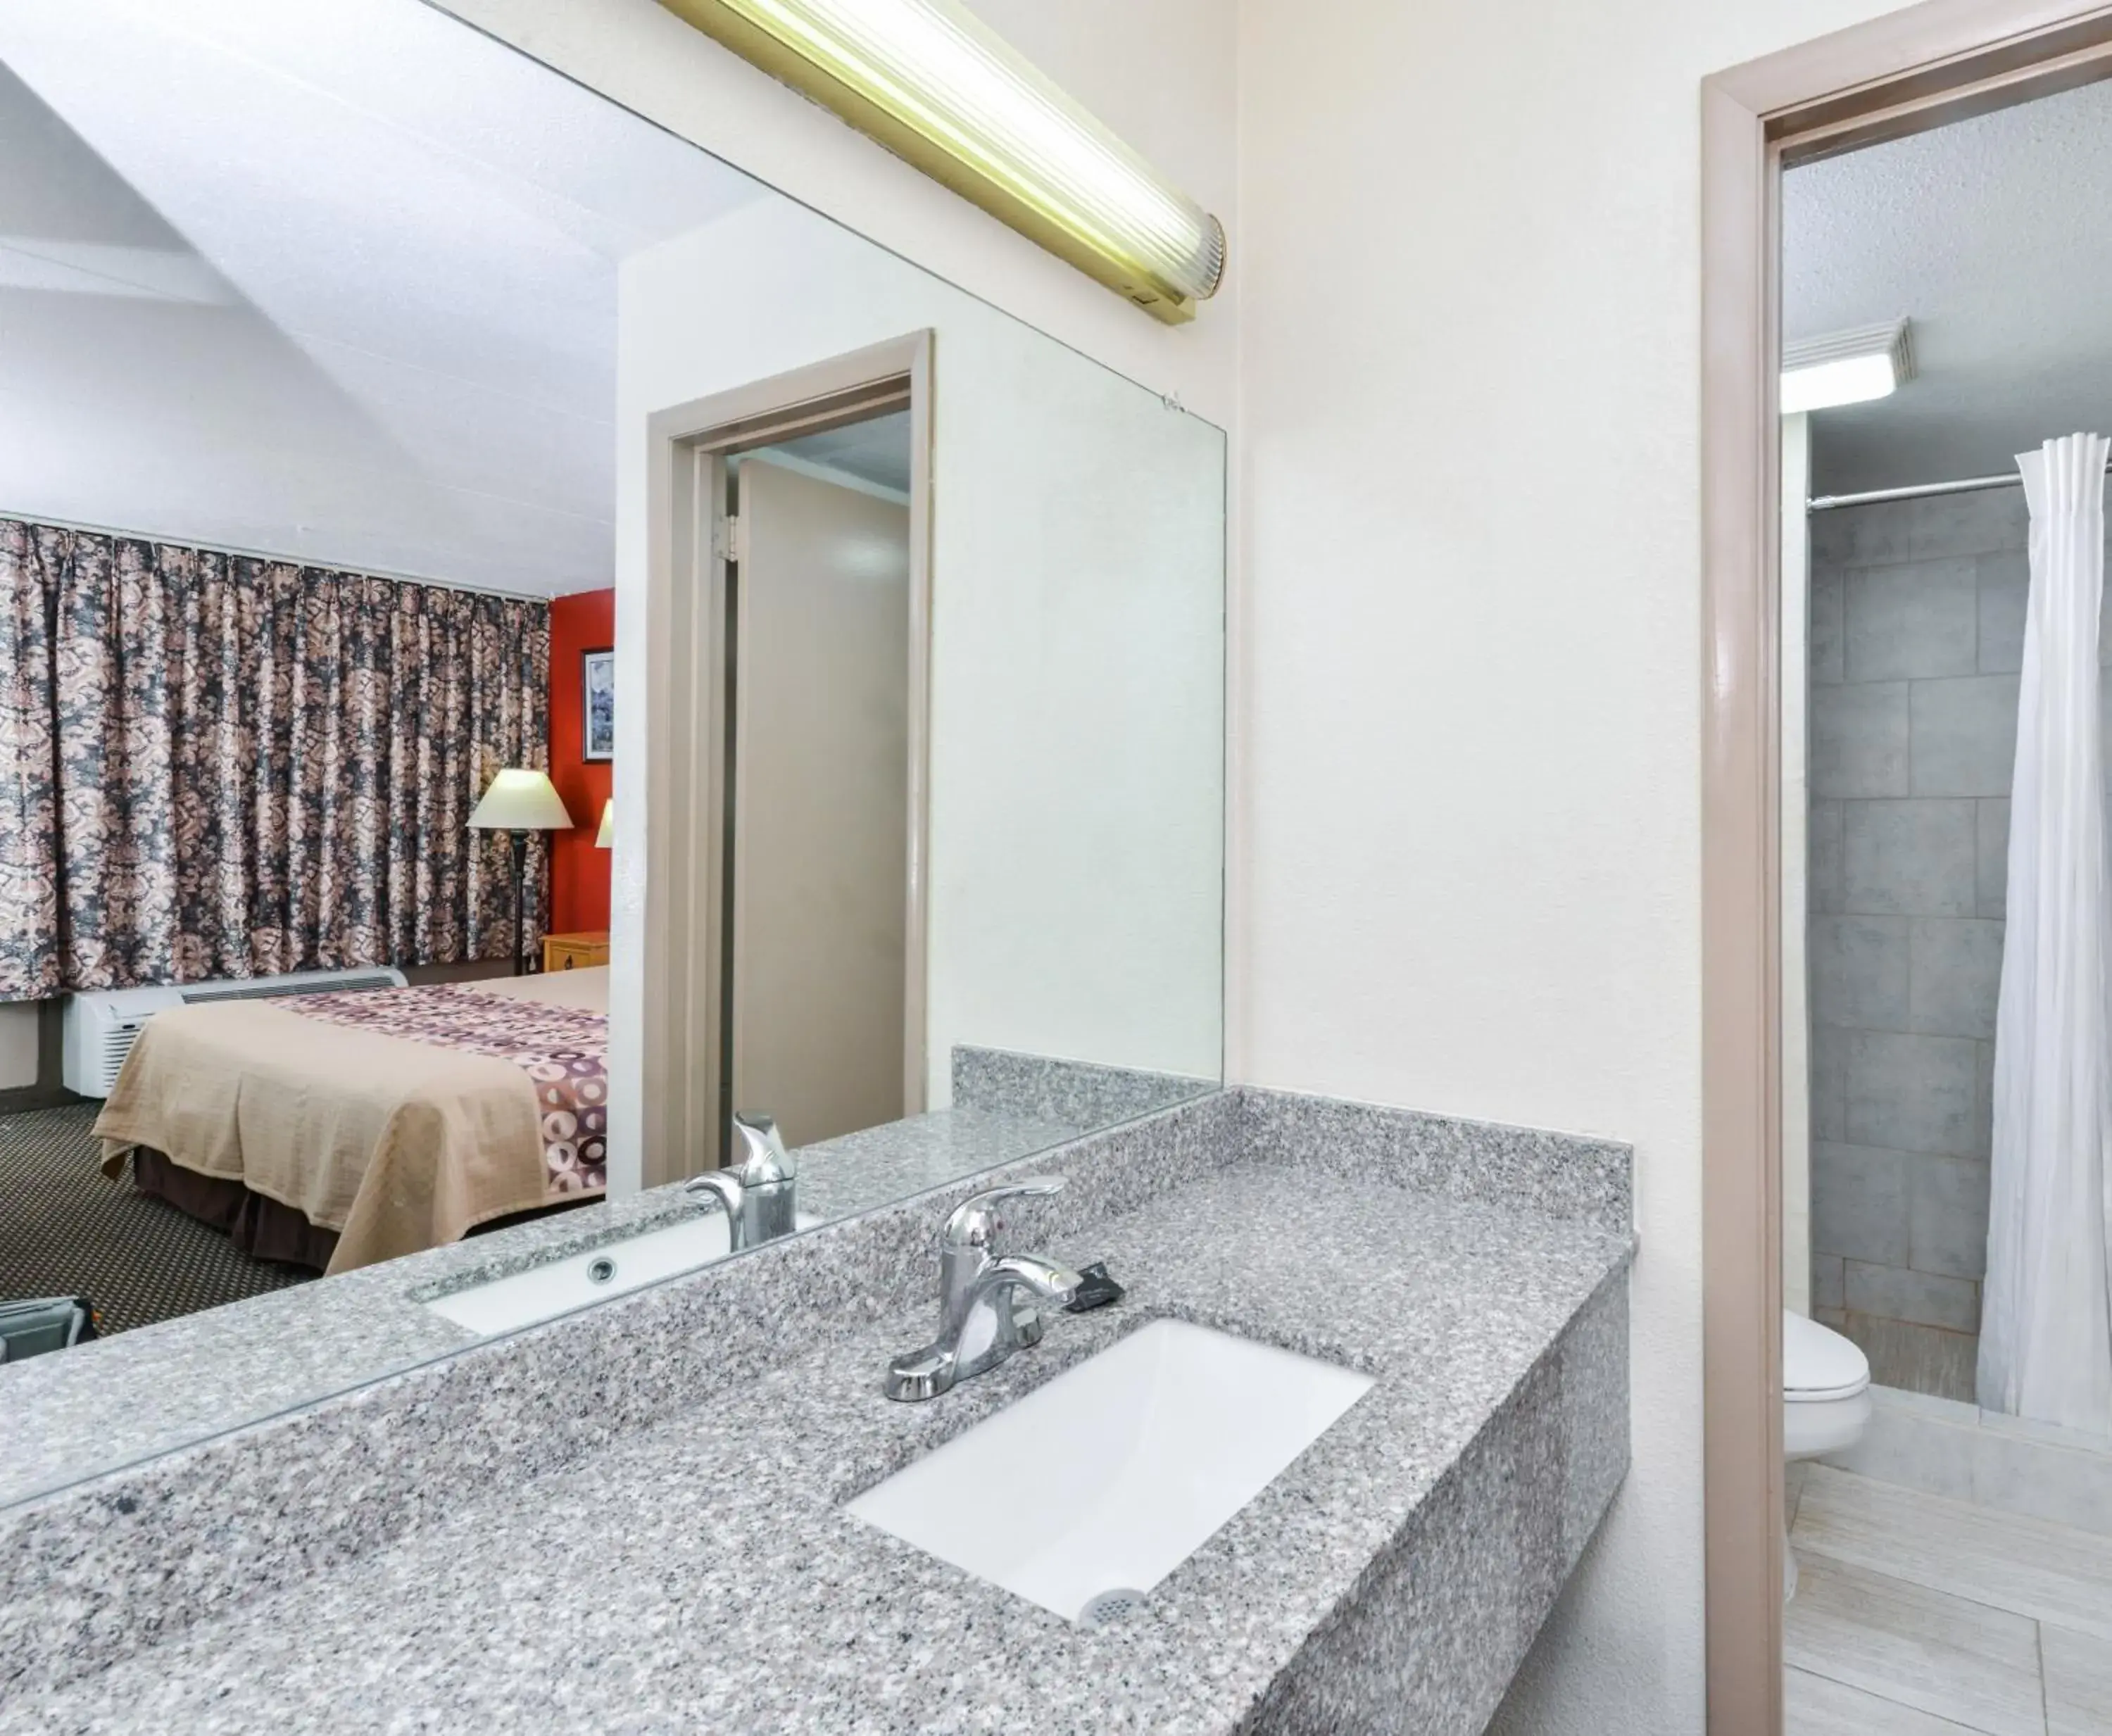 Bathroom in Americas Best Value Inn-Goodlettsville/N. Nashville